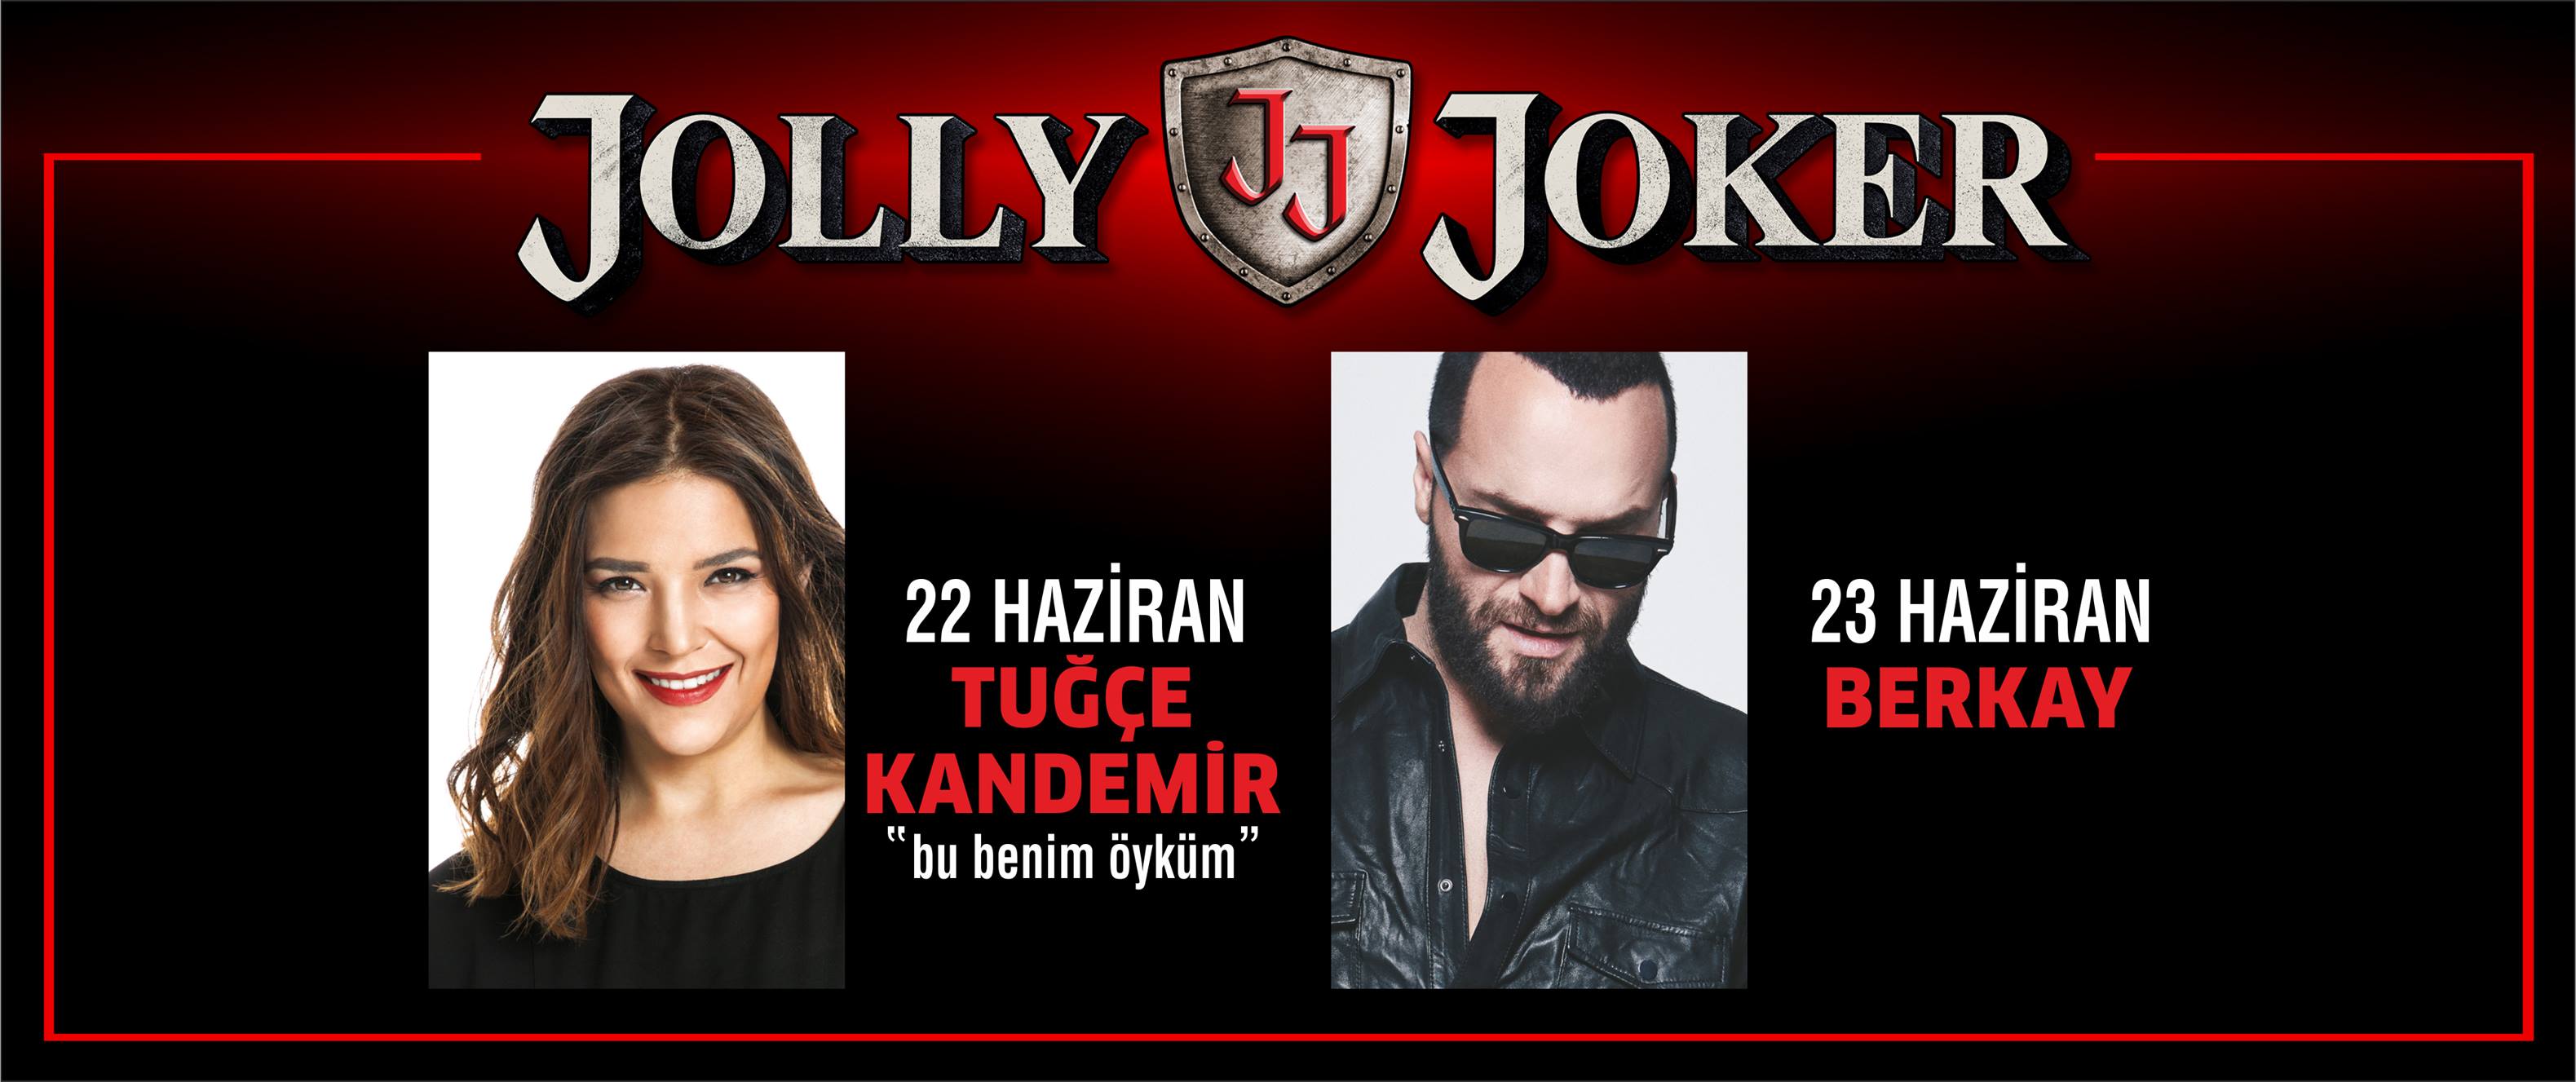 Концерты популярных турецких исполнителей состоятся в клубе "Jolly Joker Antalya" сегодня и завтра